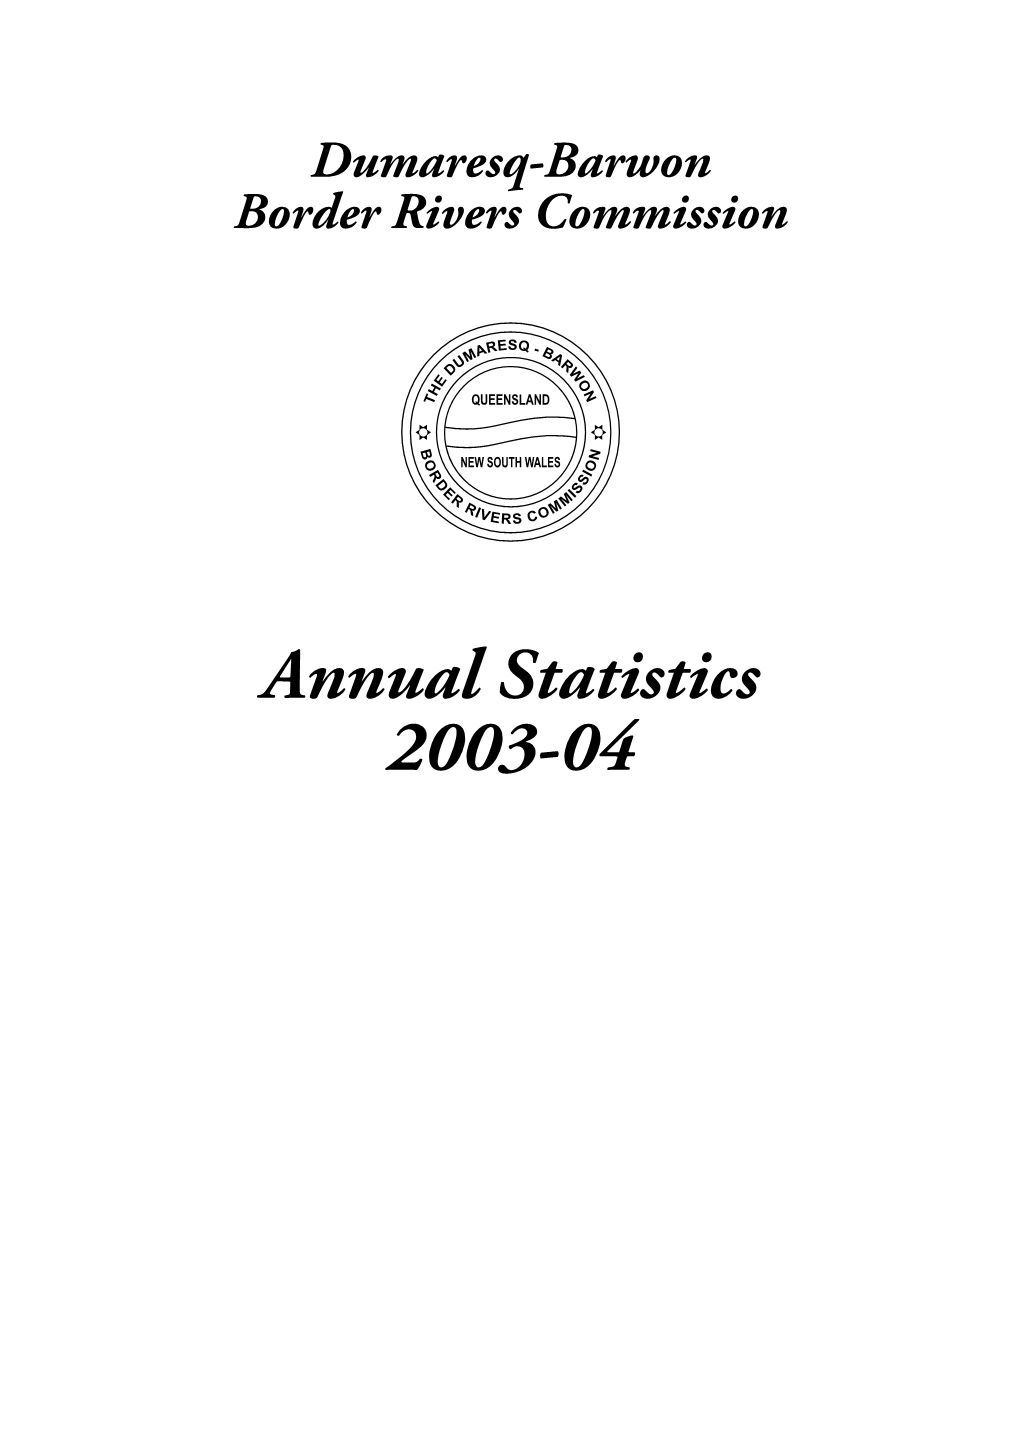 2003-04 Annual Statistics